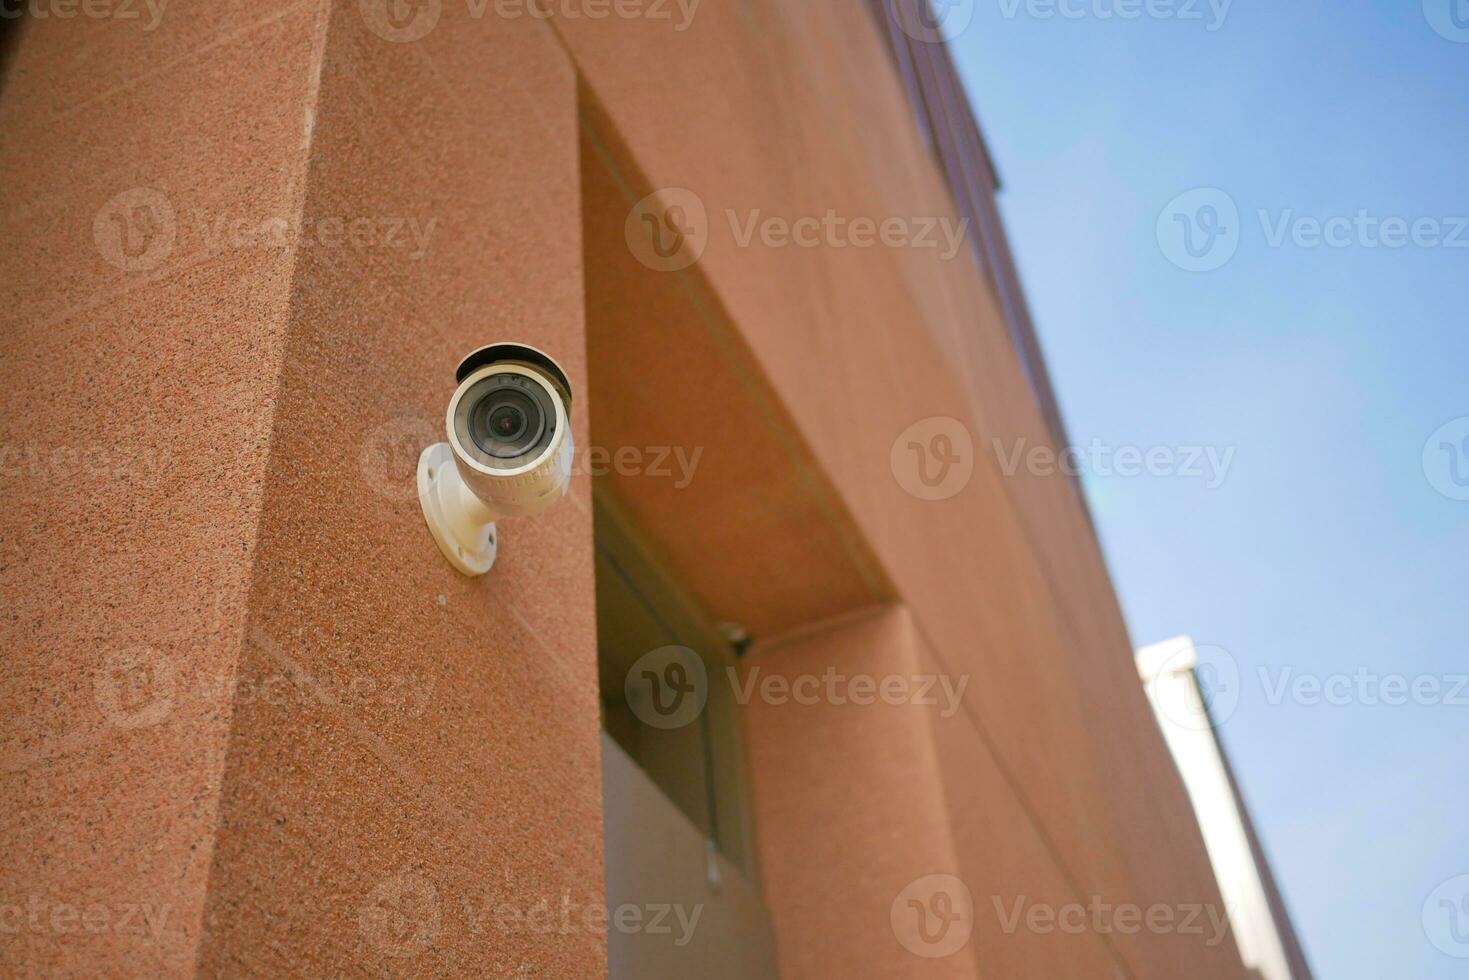 CCTV-säkerhetskamera som fungerar utomhus foto